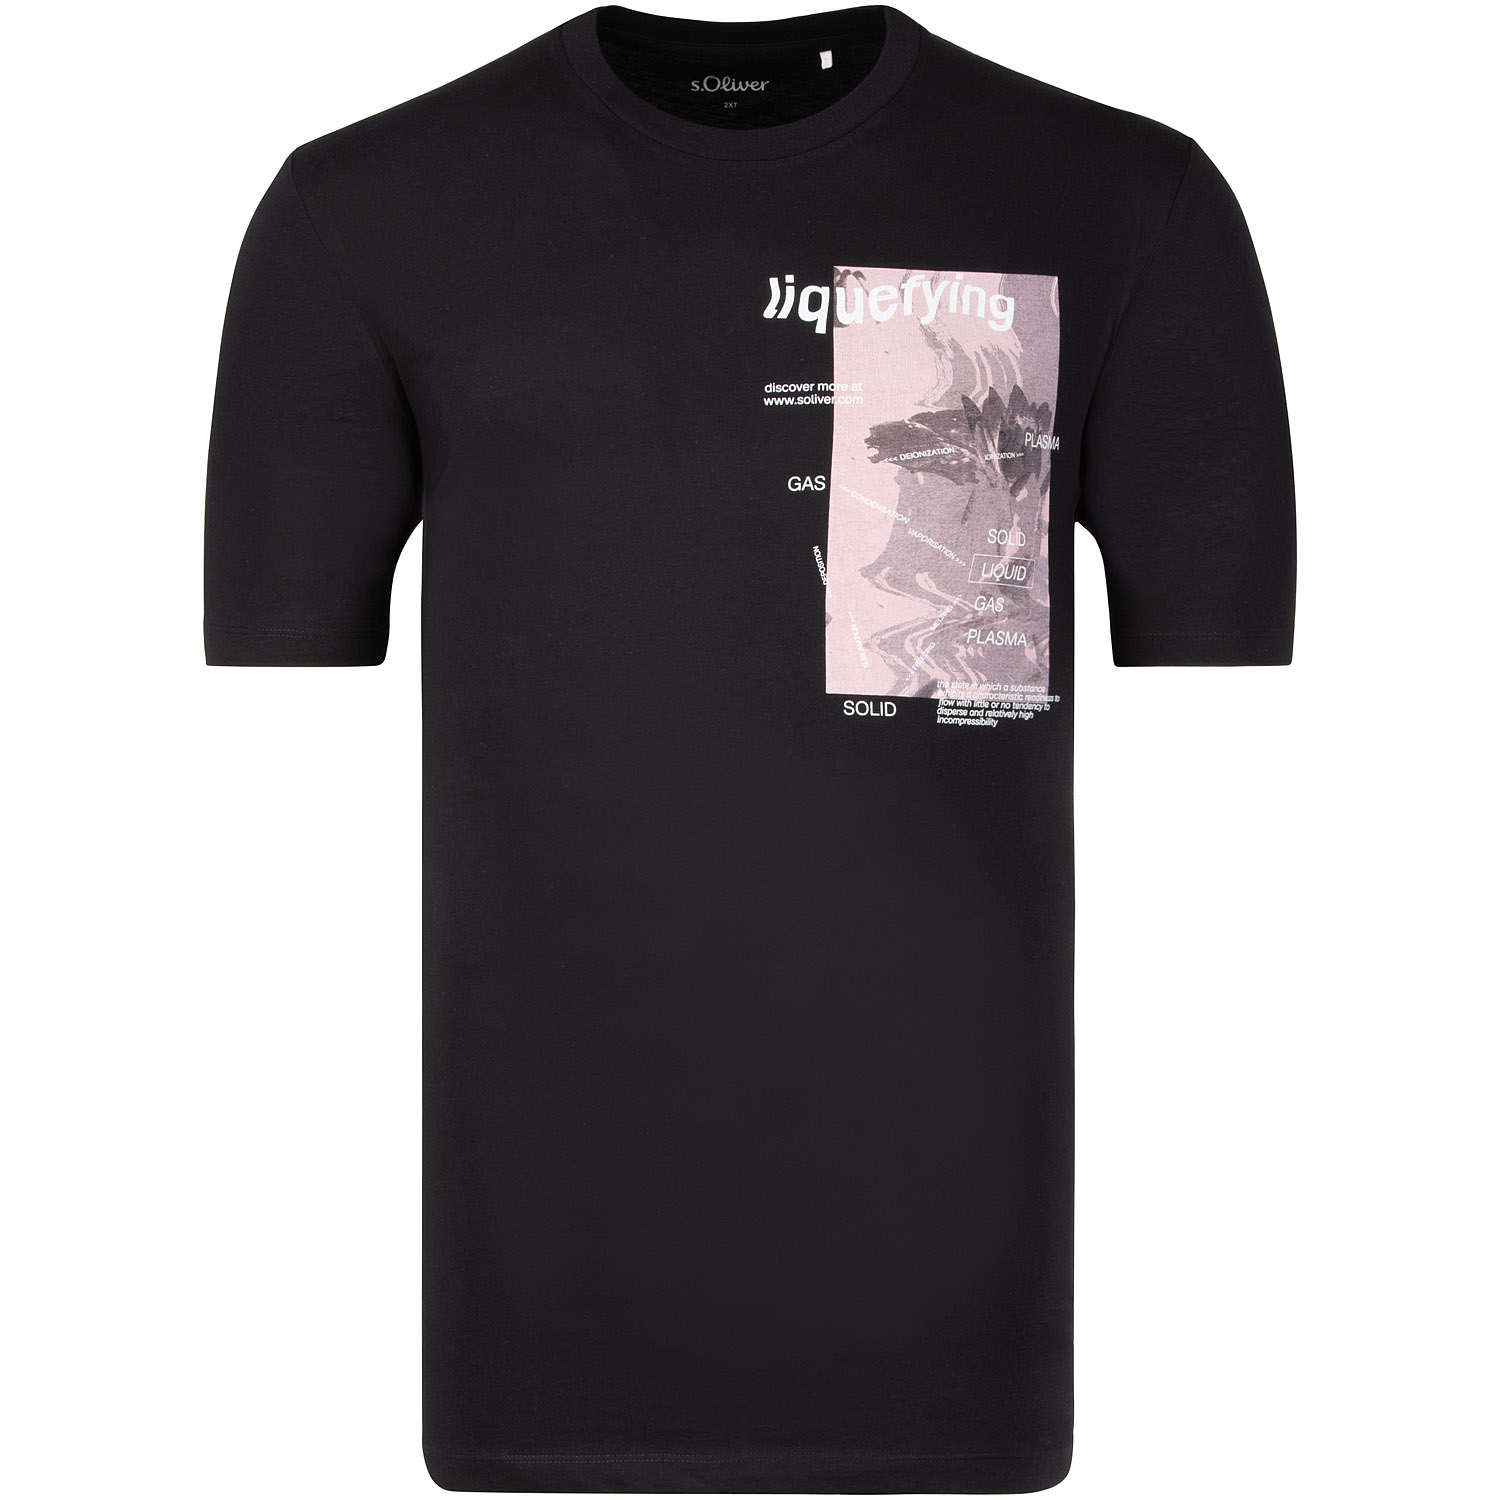 S.OLIVER T-Shirt - EXTRA lang schwarz Herrenmode in Übergrößen kaufen | T-Shirts